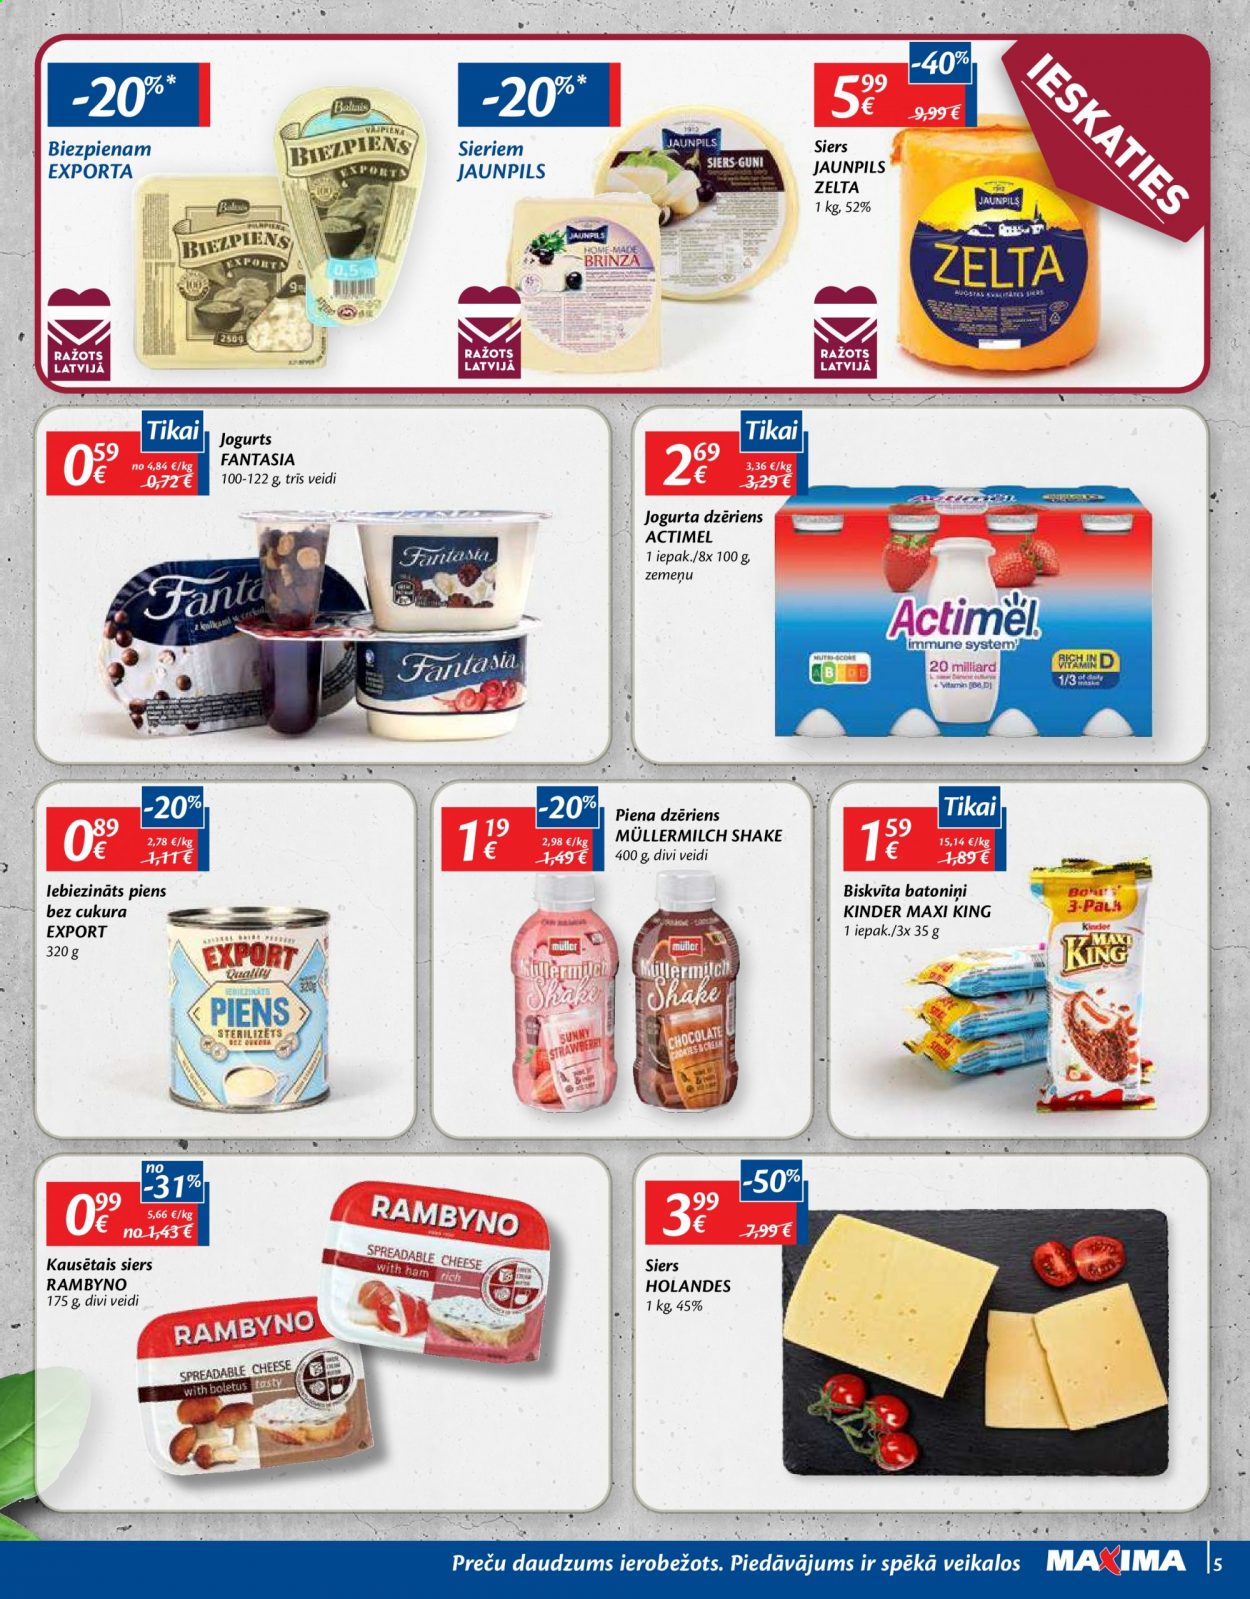 thumbnail - Maxima buklets - 04.05.2021. - 10.05.2021. - Akcijas preces - biezpiens, siers, Rambyno, jogurts, Müllermilch, piena dzēriens, piens, Fanta, Baltais. 5. lapa.